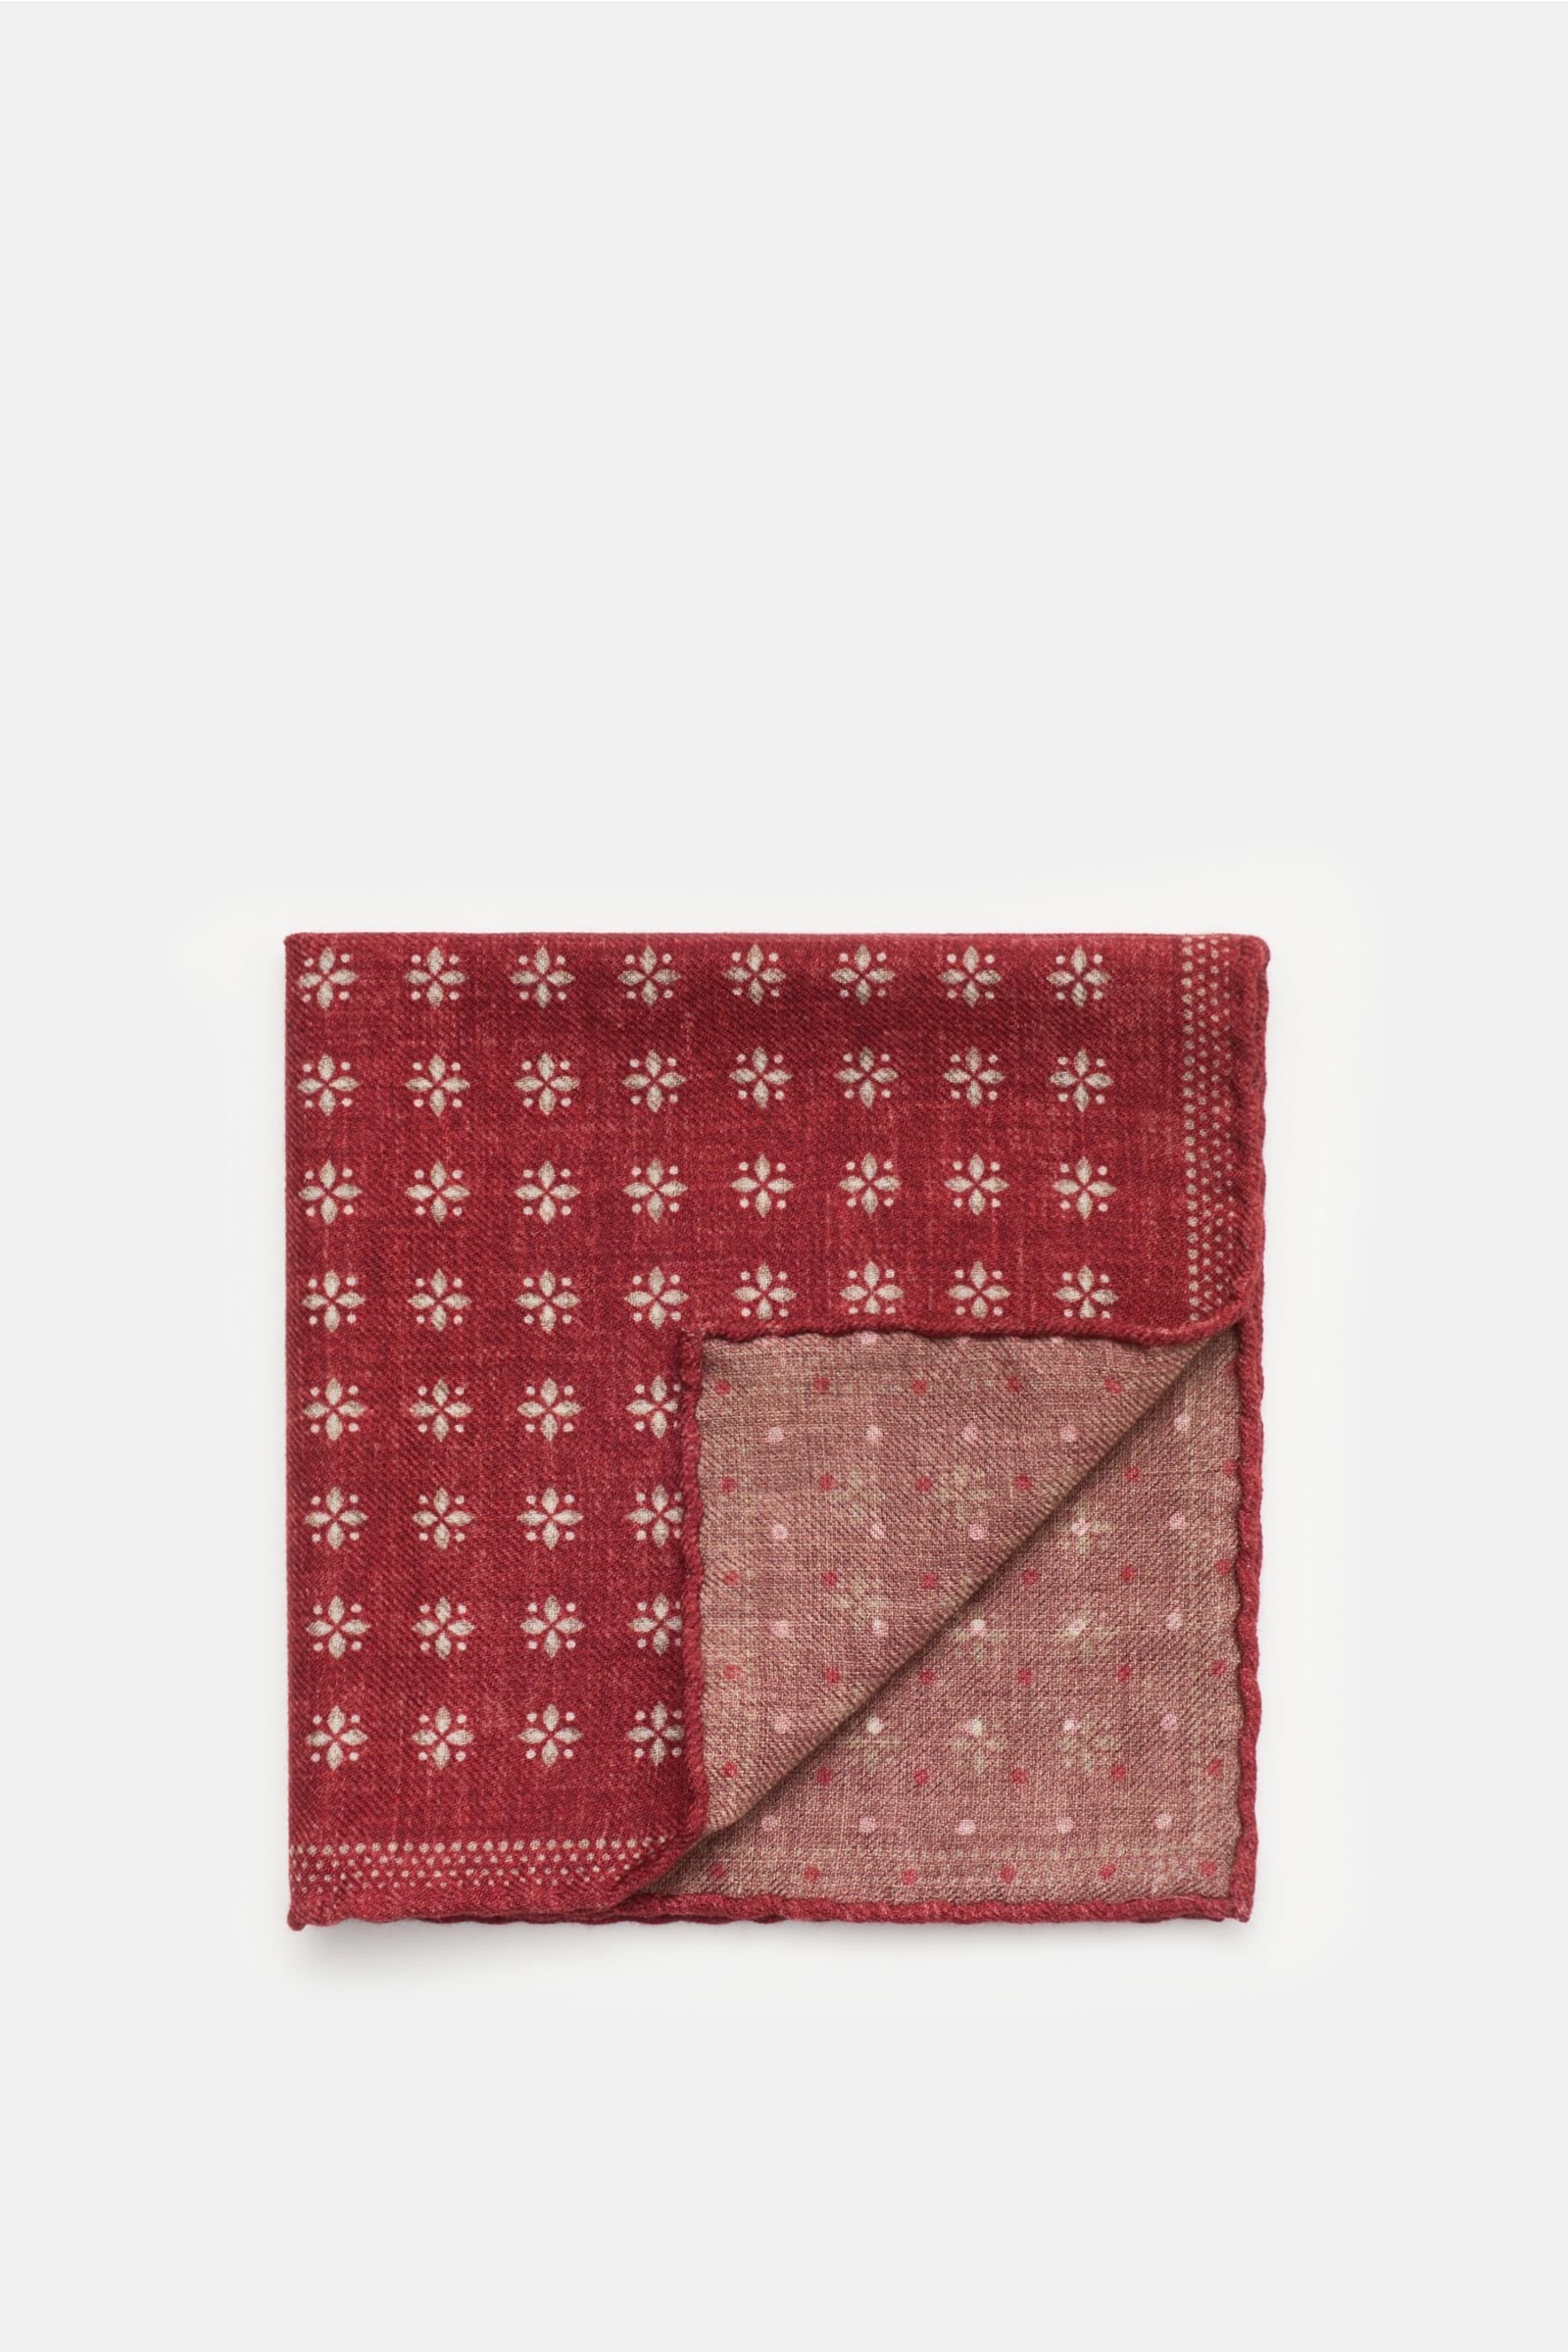 Pocket square burgundy/beige patterned